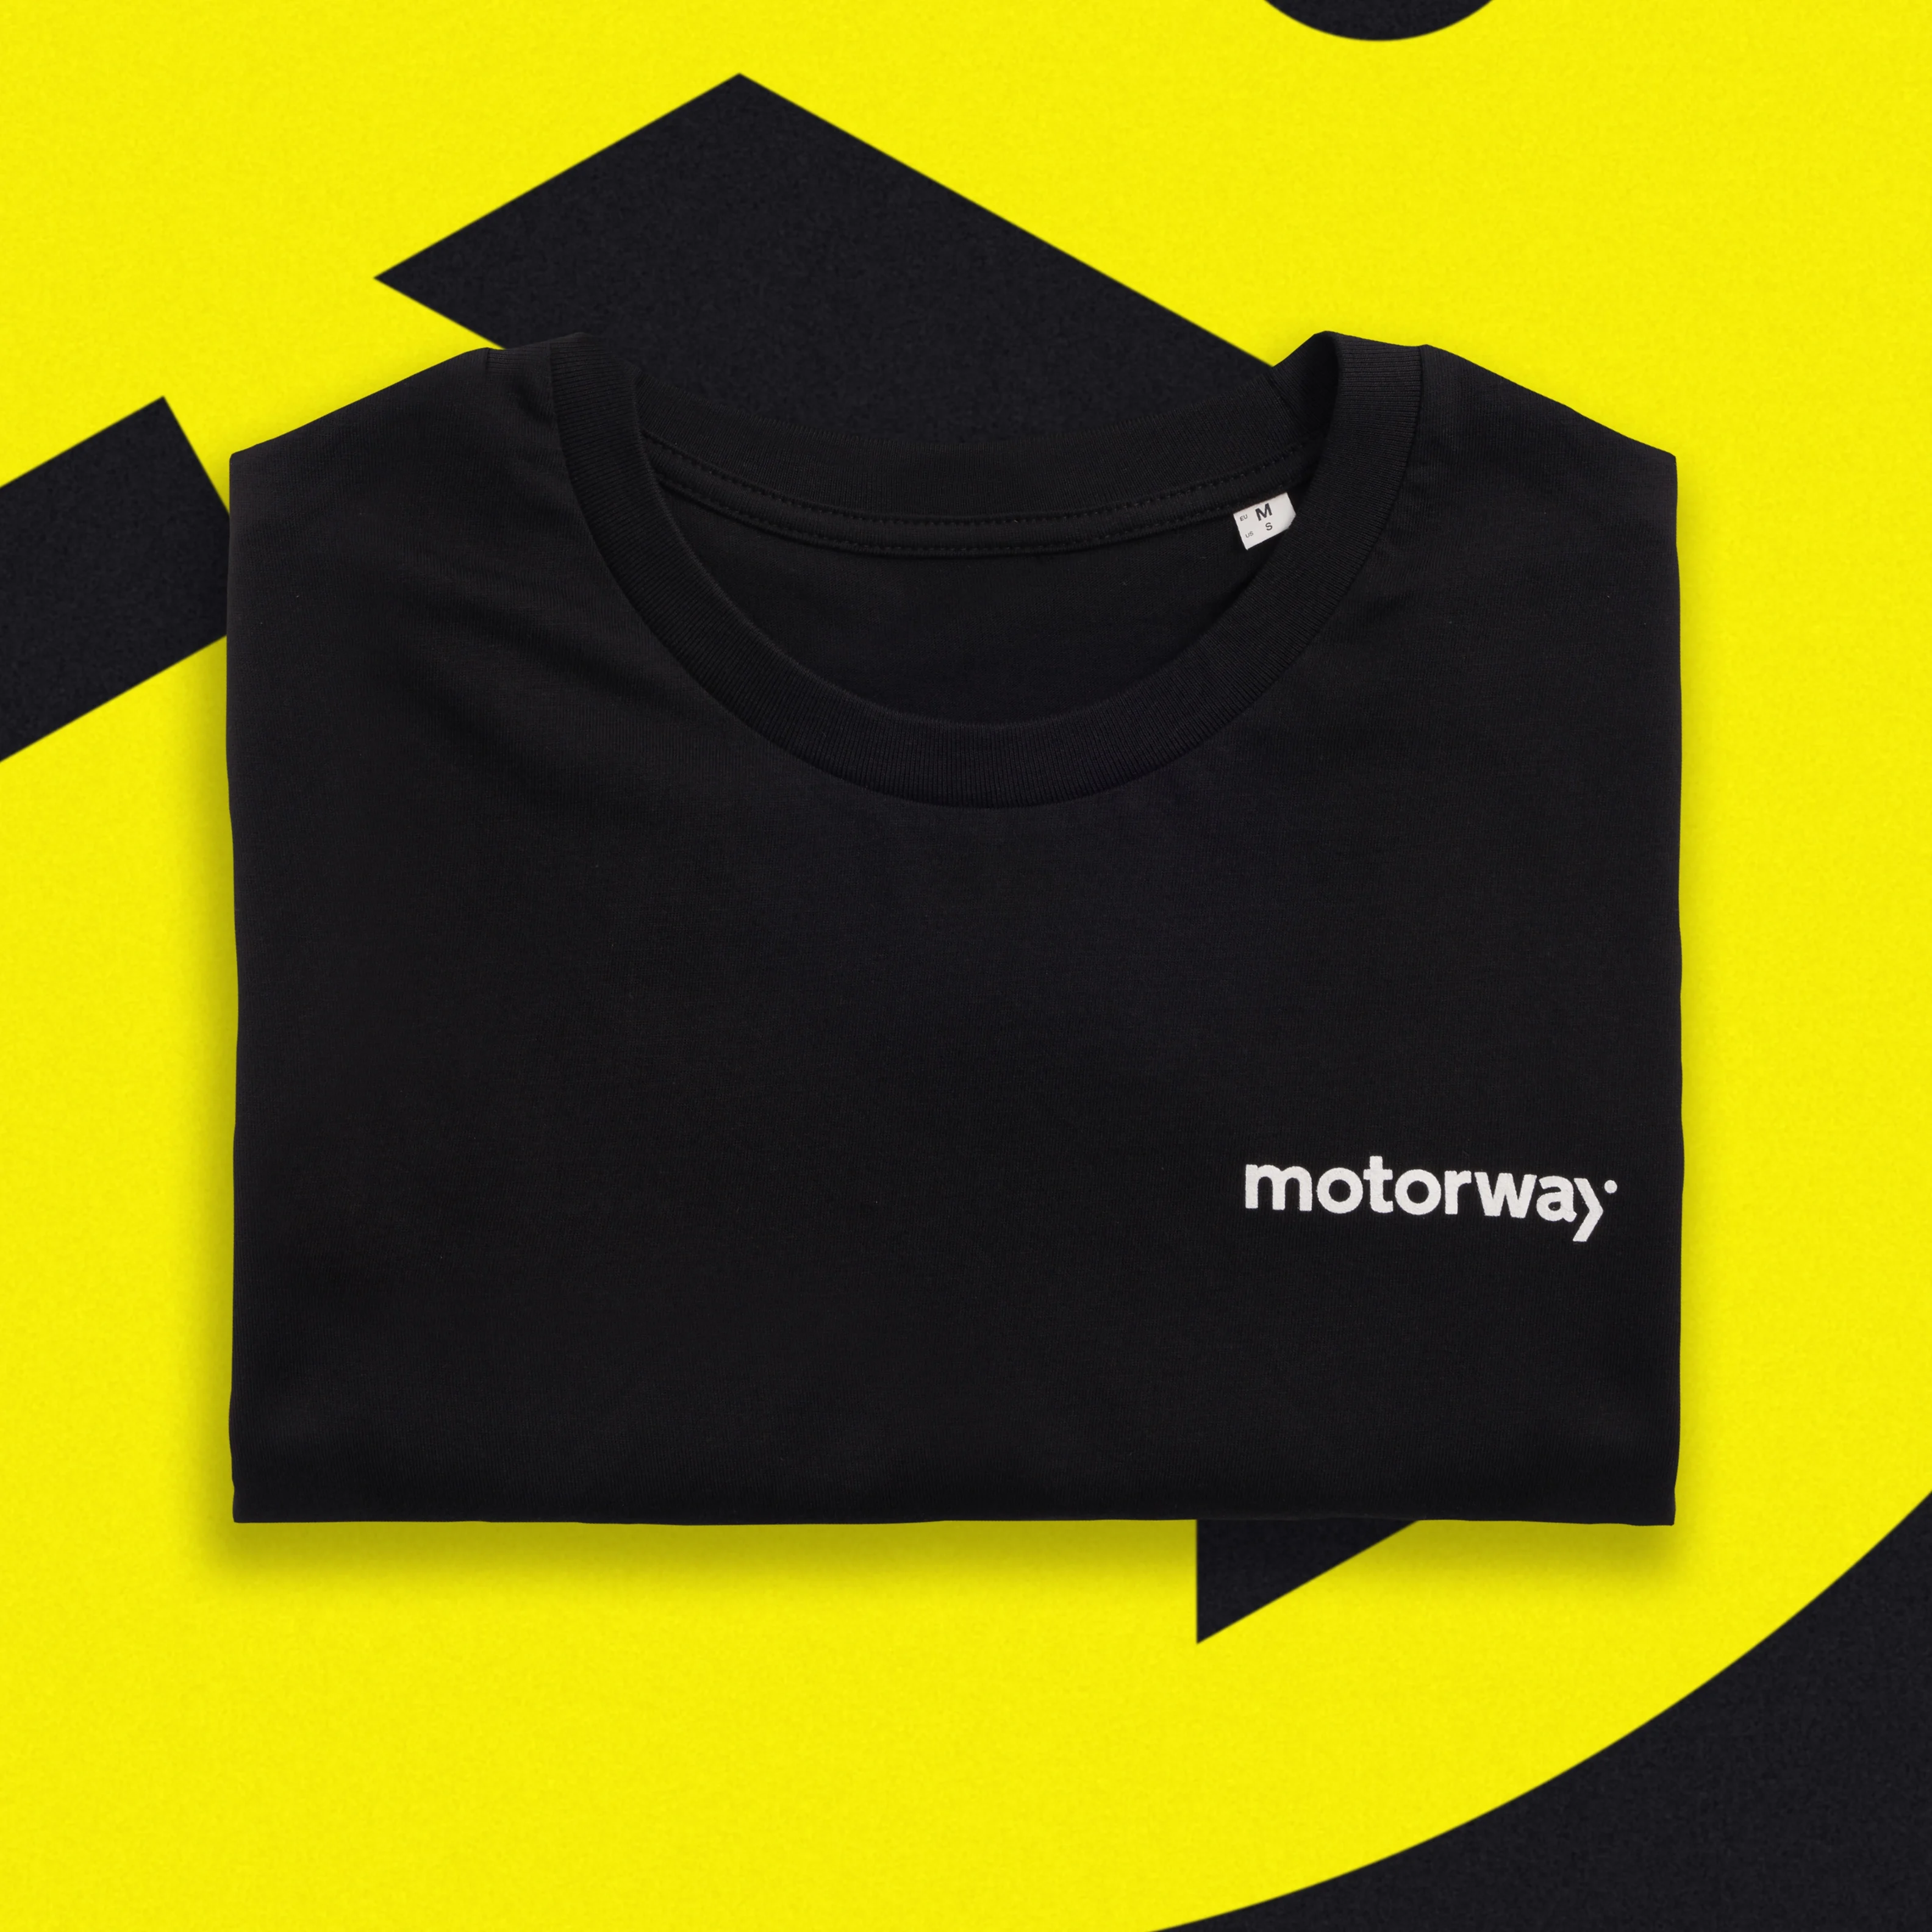 Motorway Go Swag Custom Branded Merchandise Welcome Pack Onboarding t-shirt tee